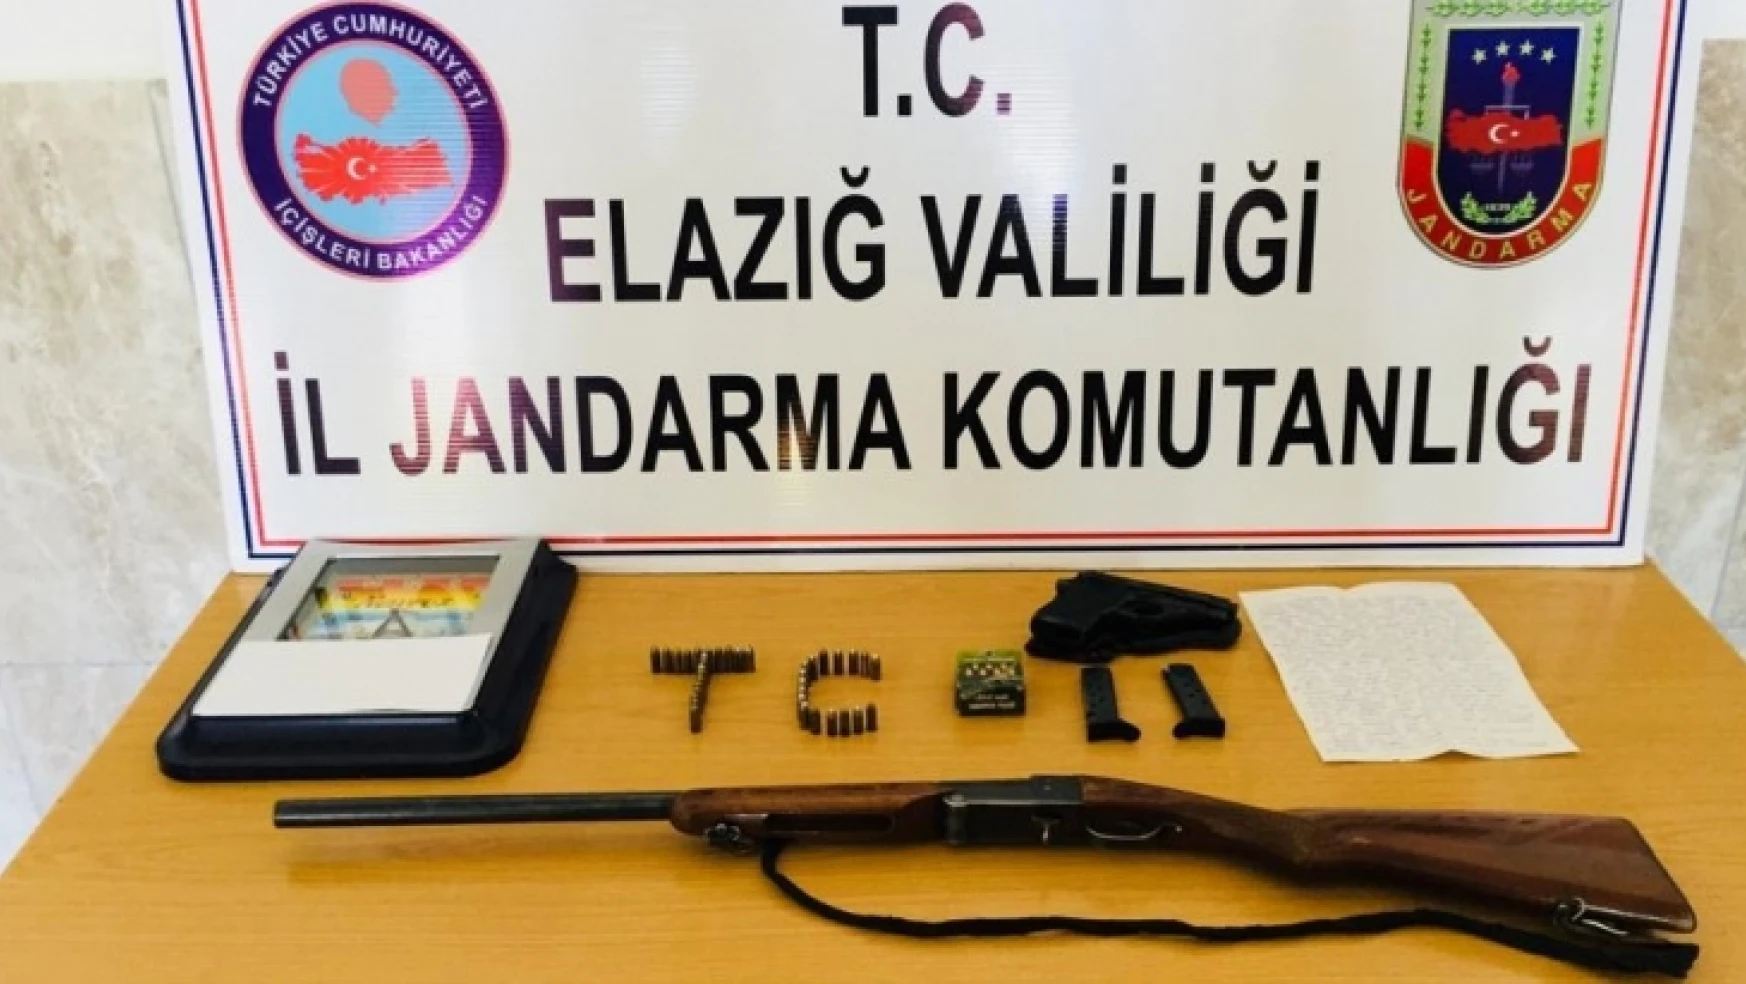 Elazığ'da PKK-KCK Operasyonu, 5 Kişi Gözaltına Alındı